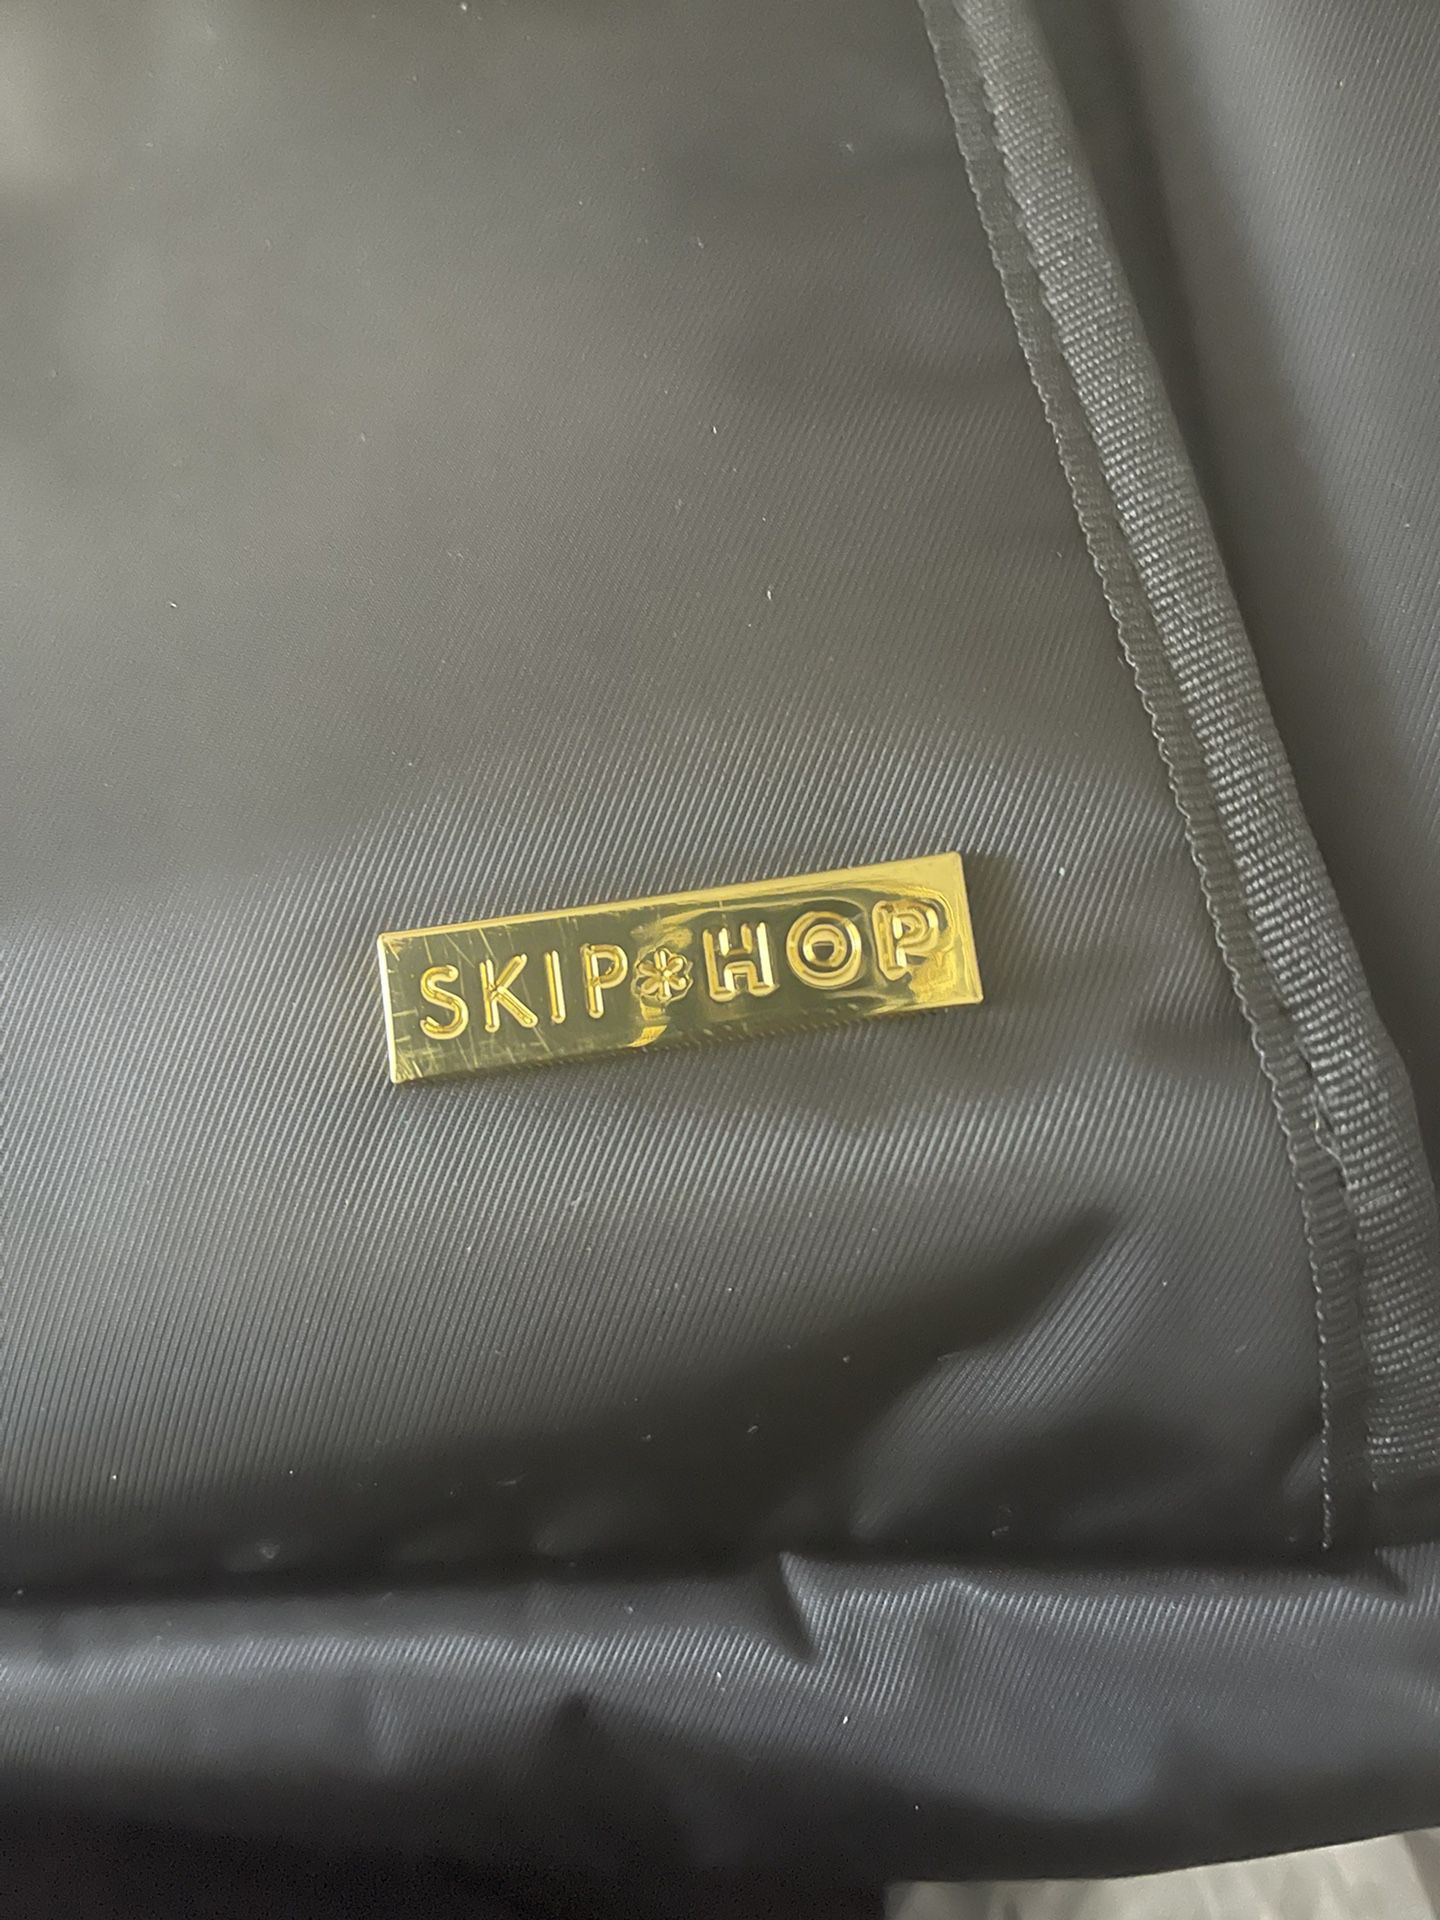 Skip Hop Diaper bag